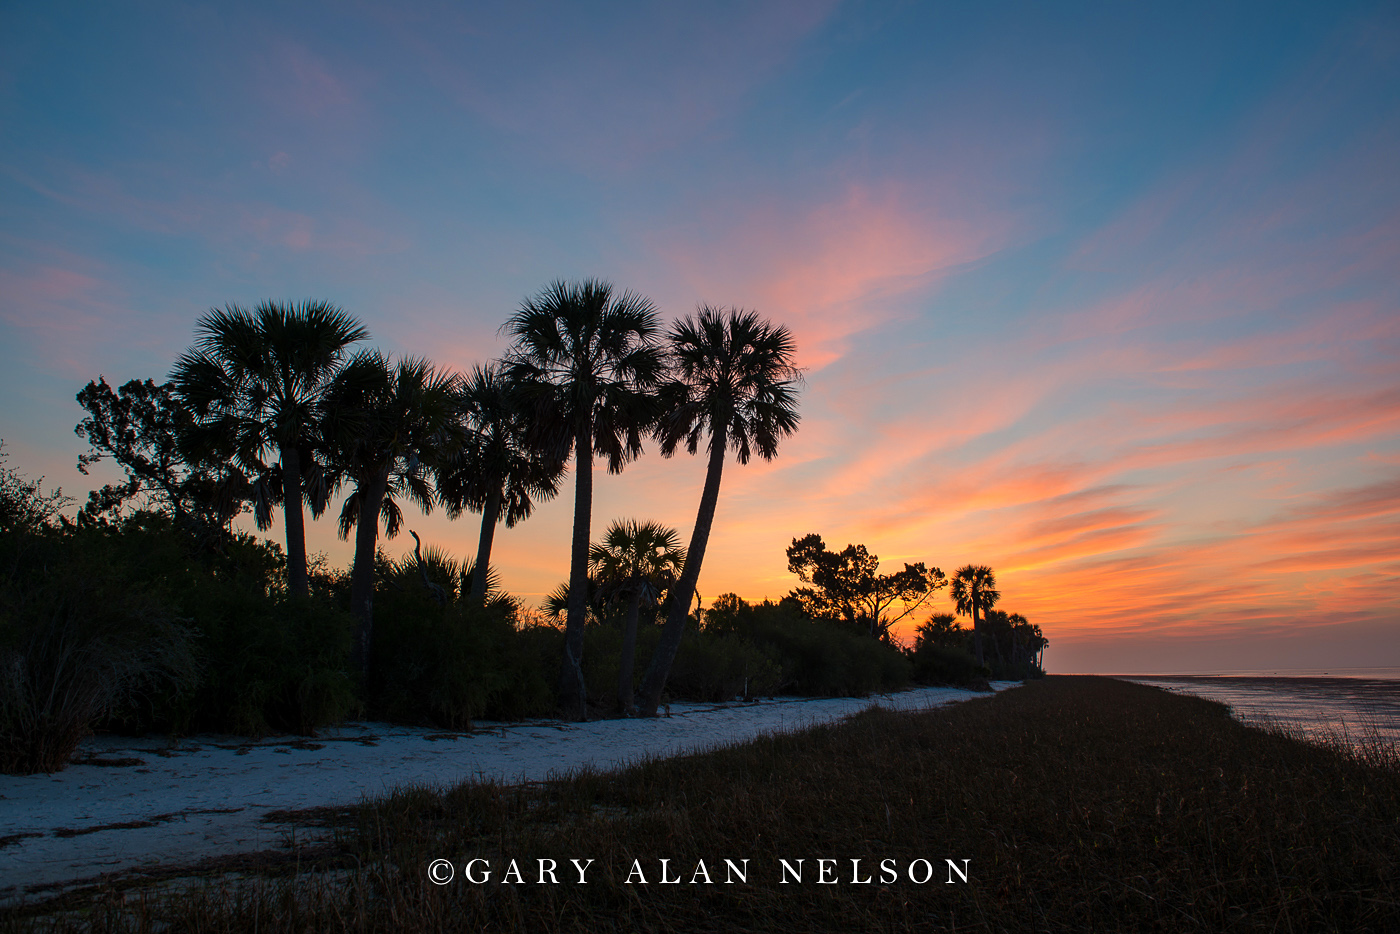 FL-15-14-NWR Sunrise over palms and the Gulf Coast, St. Marks National Wildlife Refuge, Florida